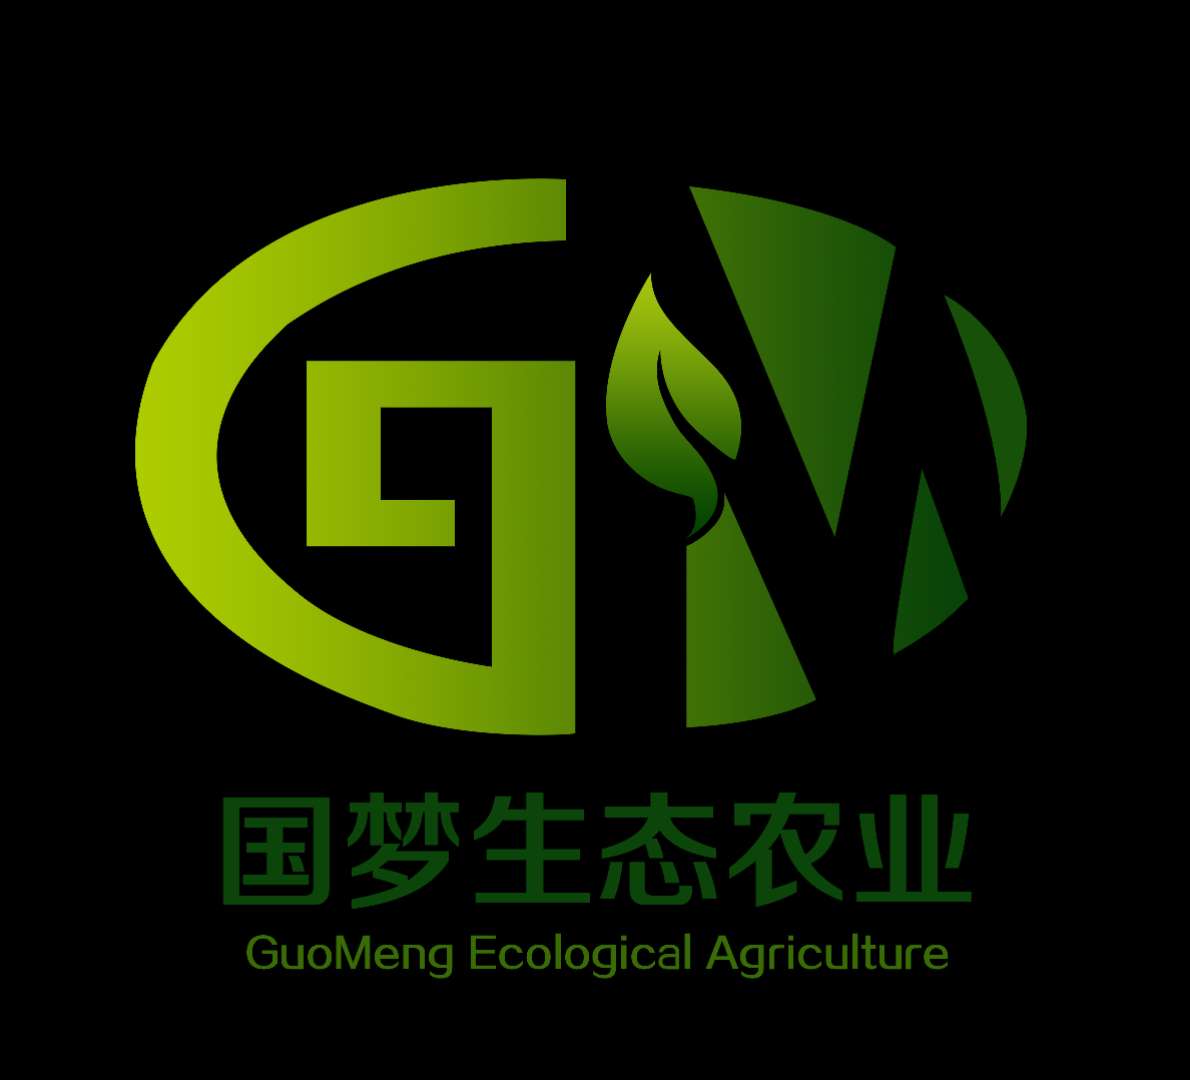 吉林省國夢生態農業科技有限公司